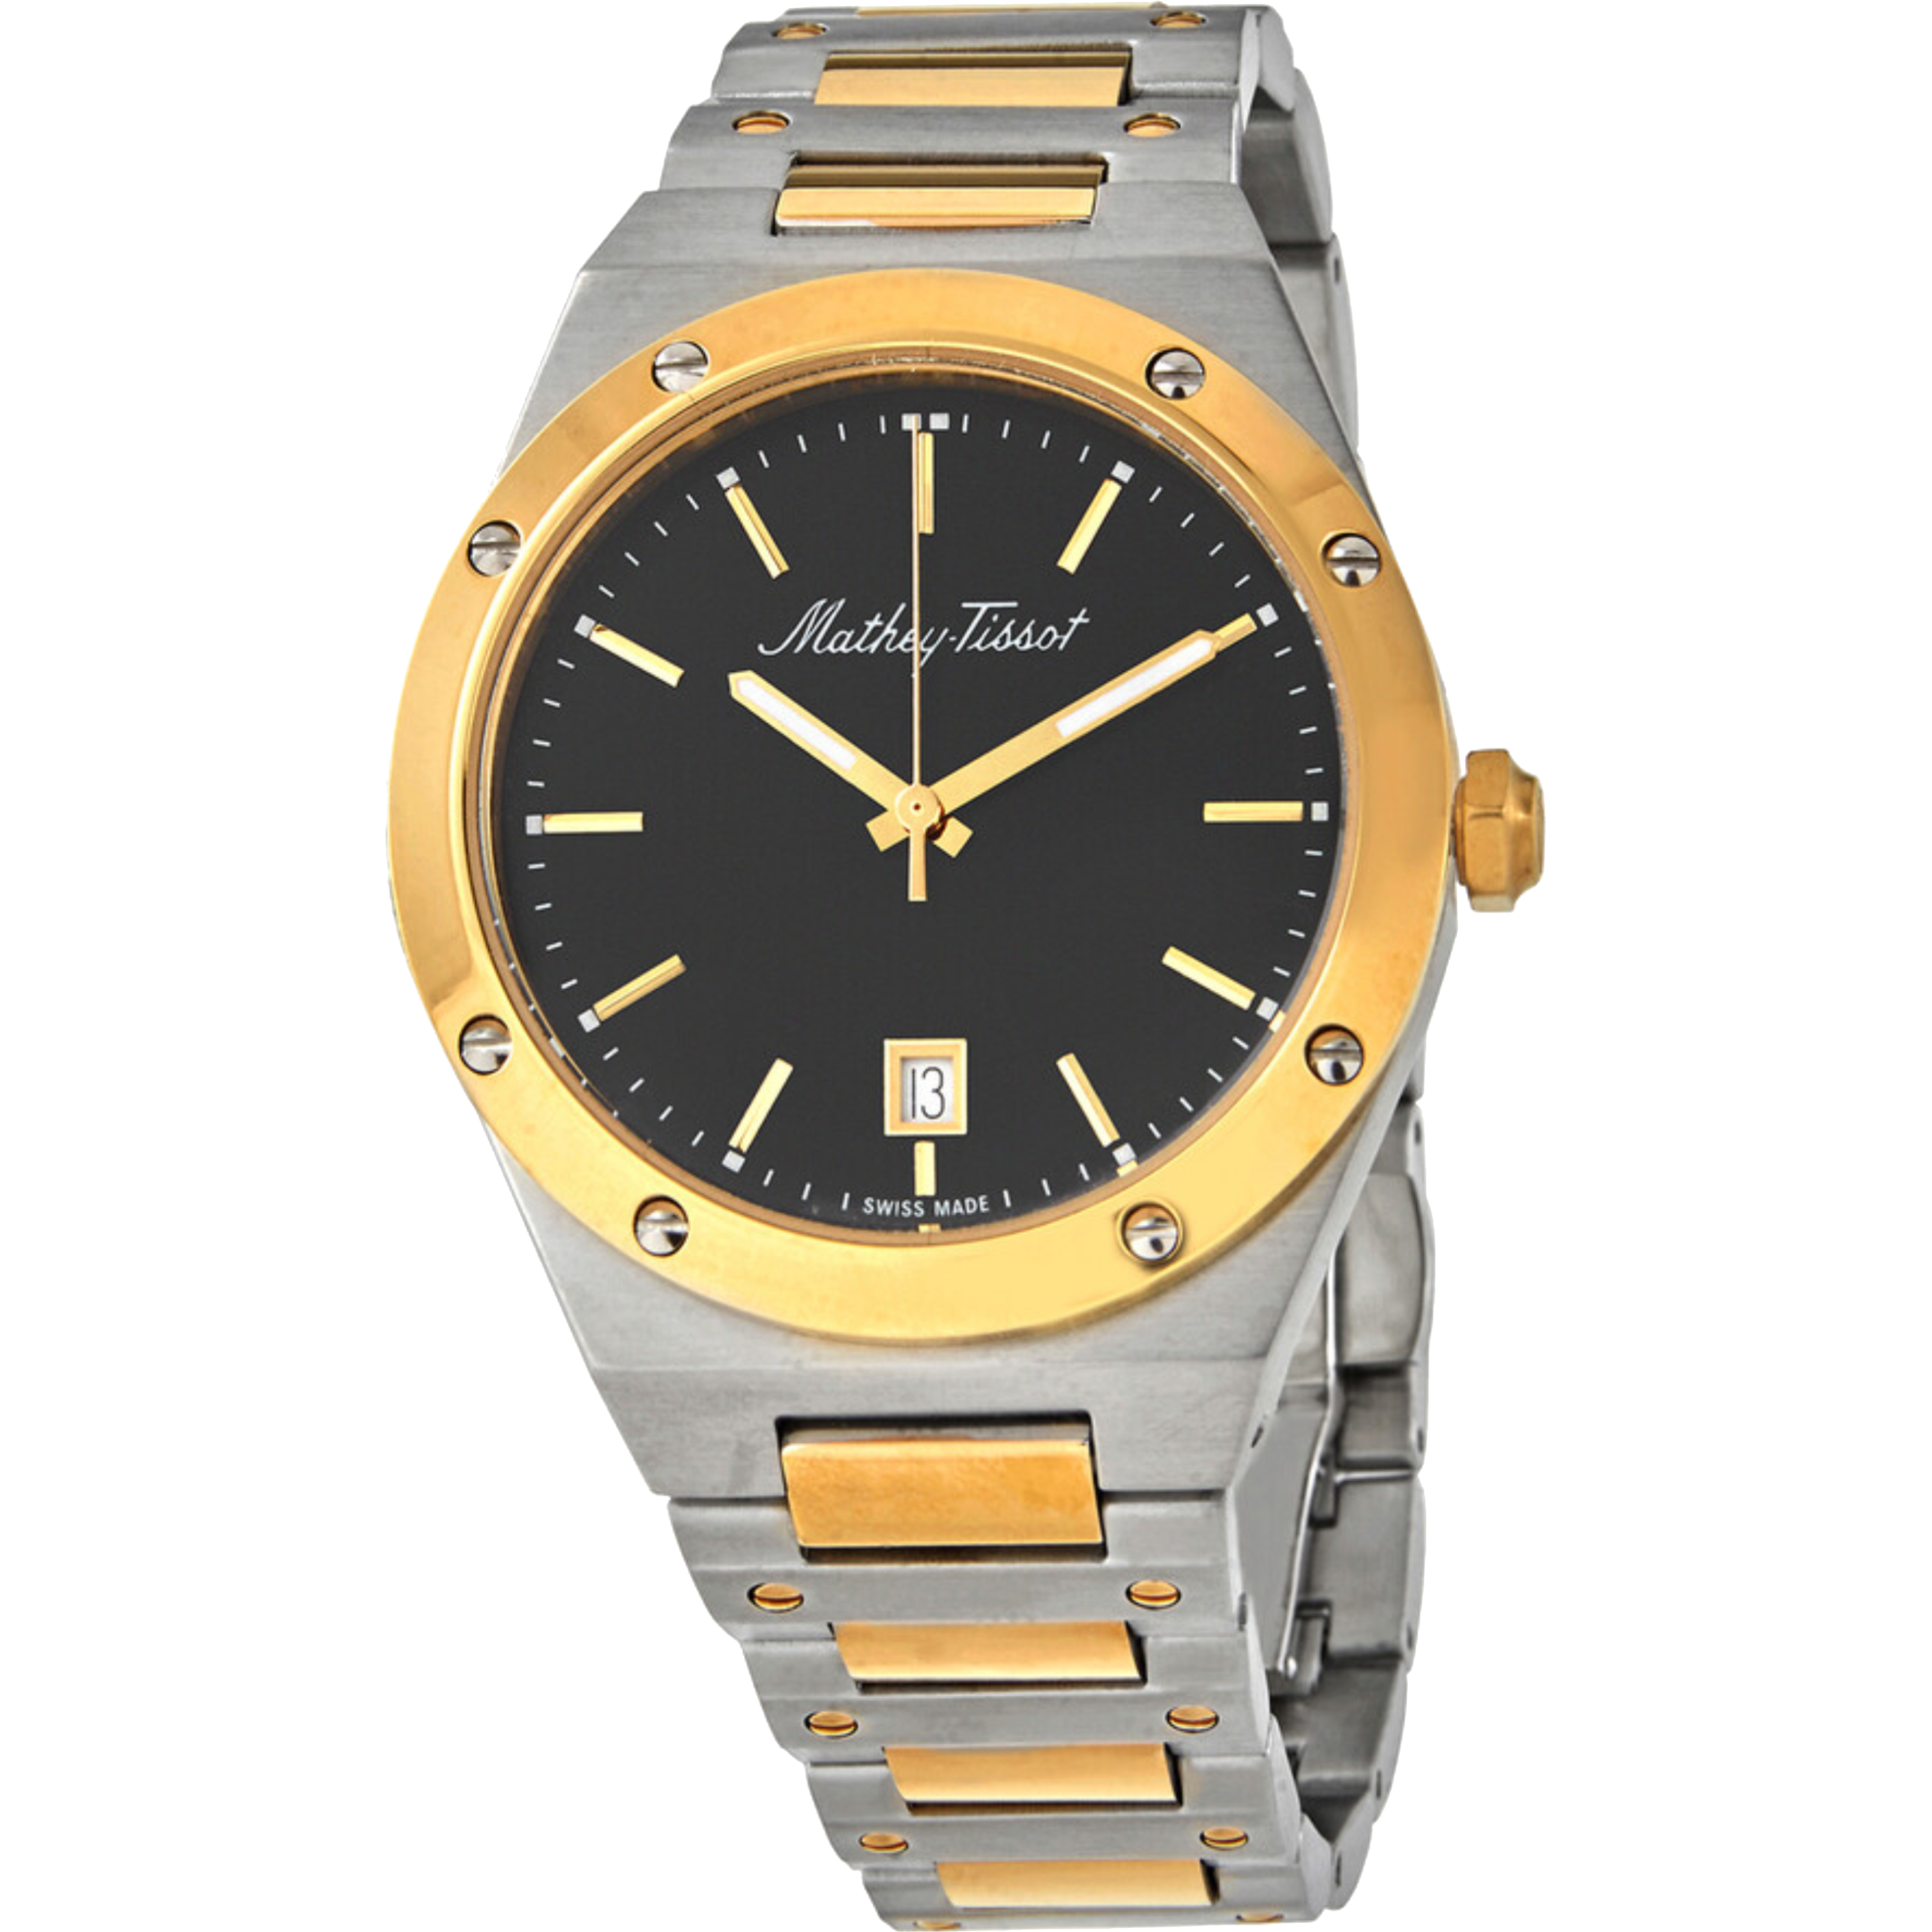 שעון יד לגבר Mathey Tissot H680BN 41mm צבע כסף/זהב/שחור/זכוכית ספיר - אחריות לשנה ע"י היבואן